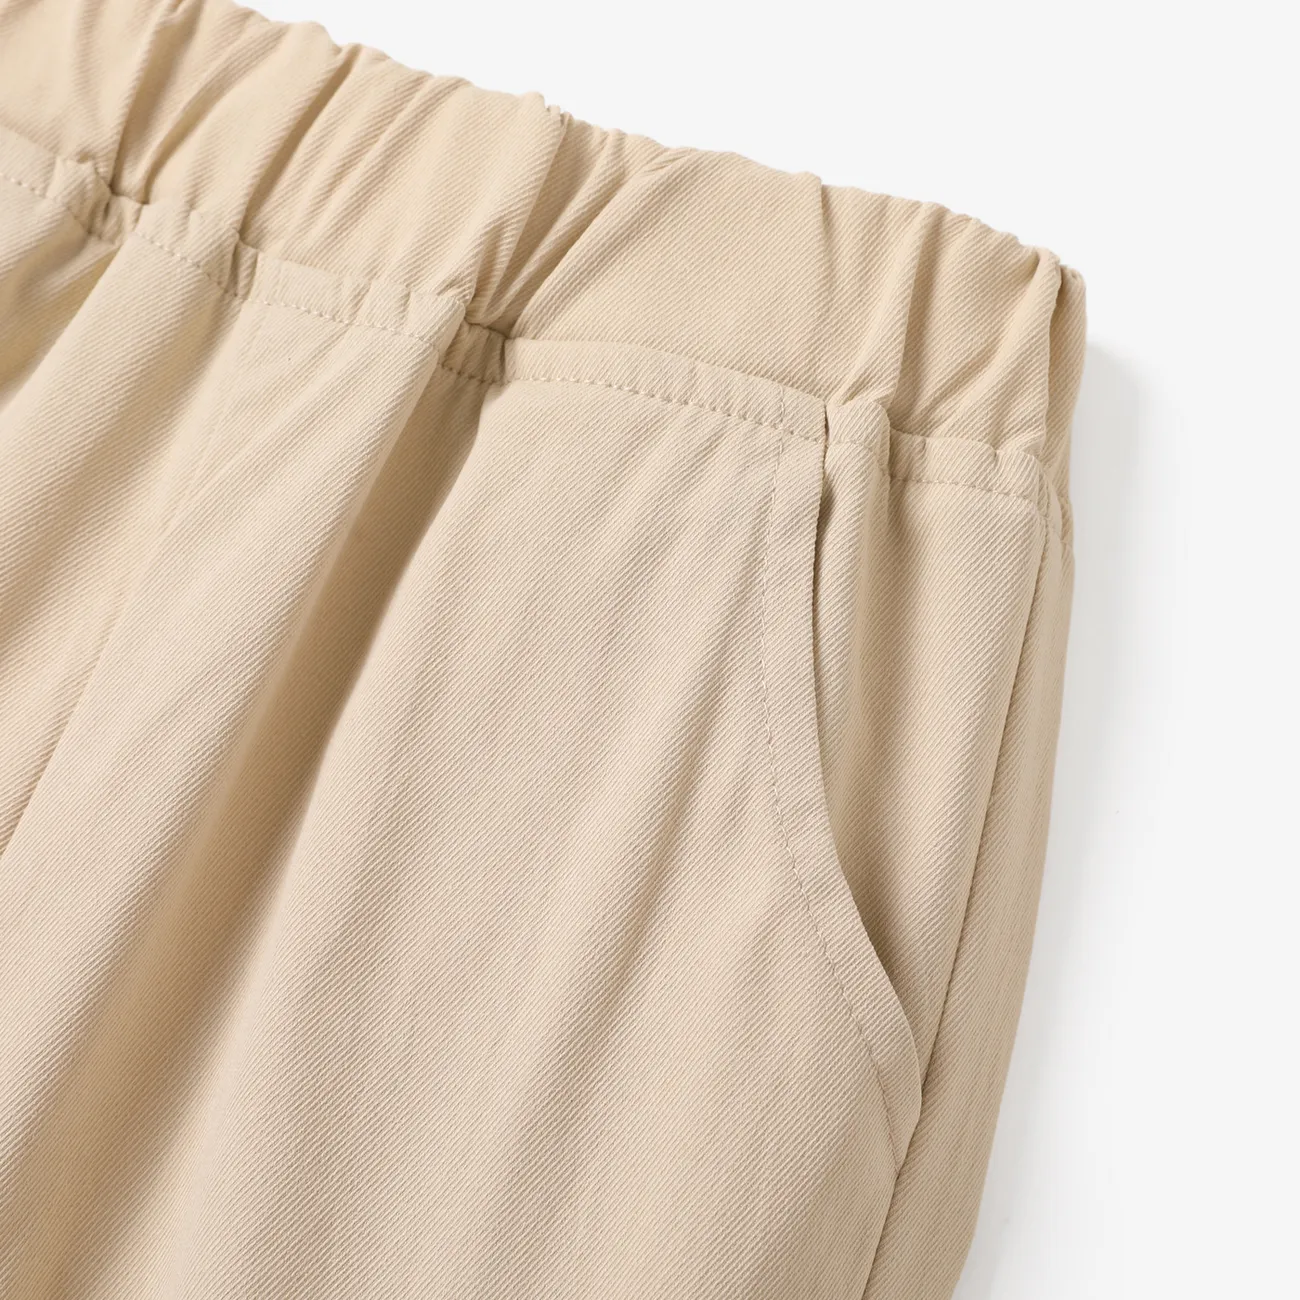 Toddler Boy Casual Pocket Design Elasticized Pants Beige big image 1